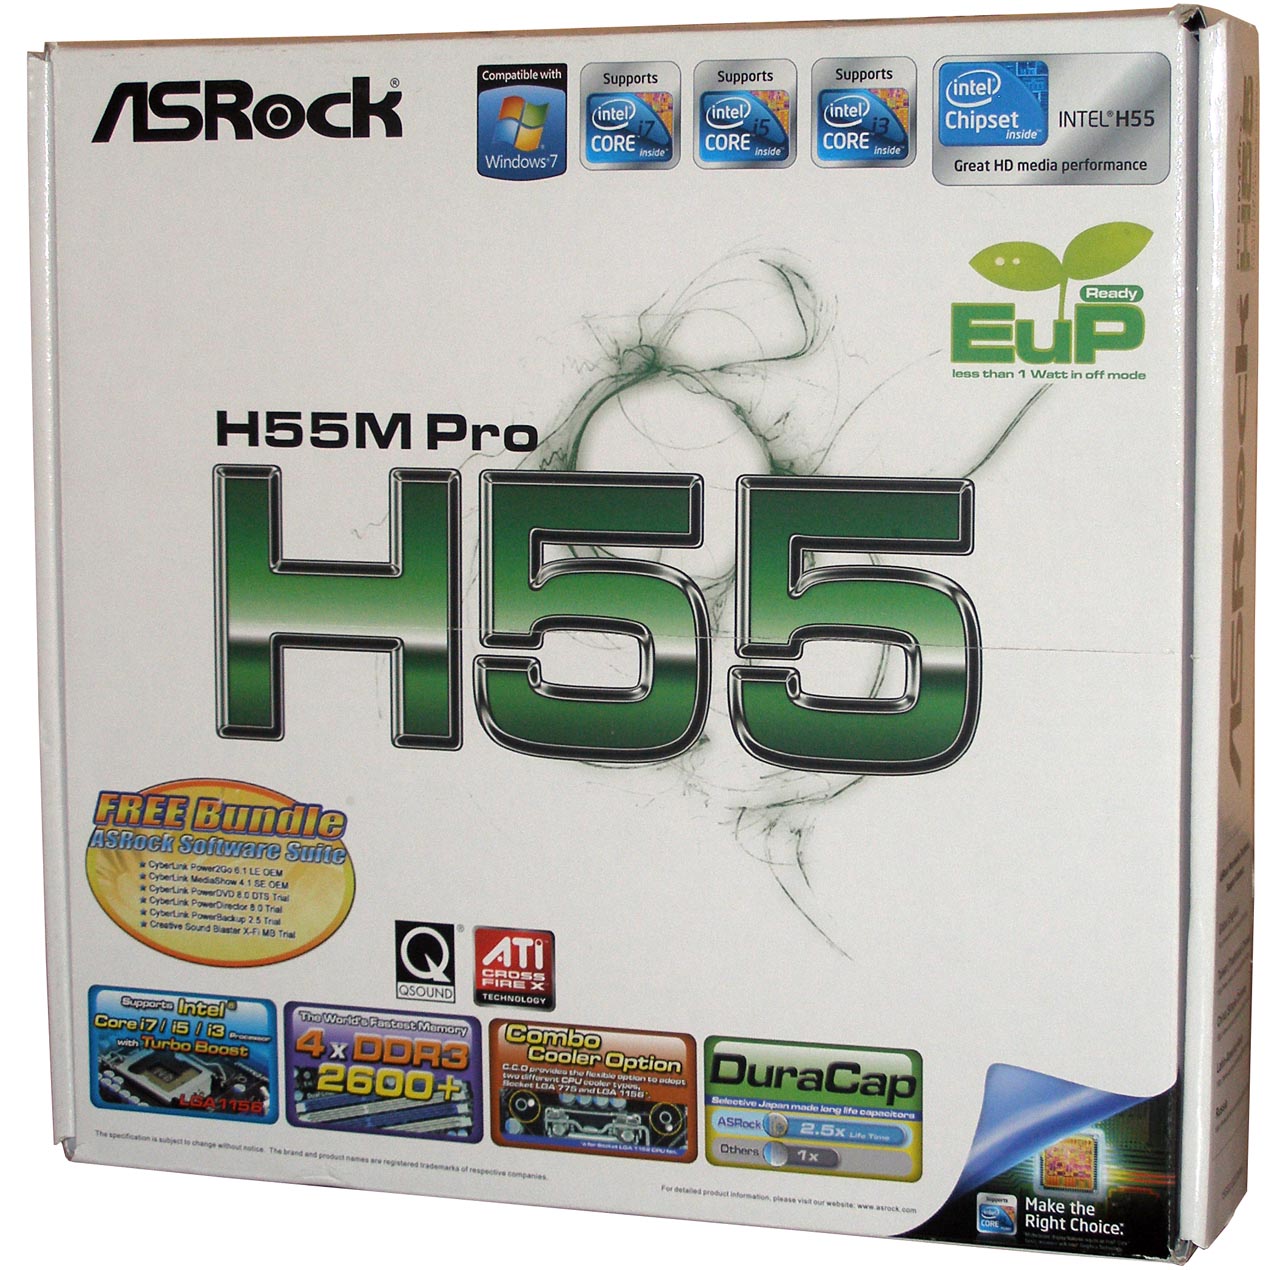 ASRock H55M Pro vs. MSI H55M-E33